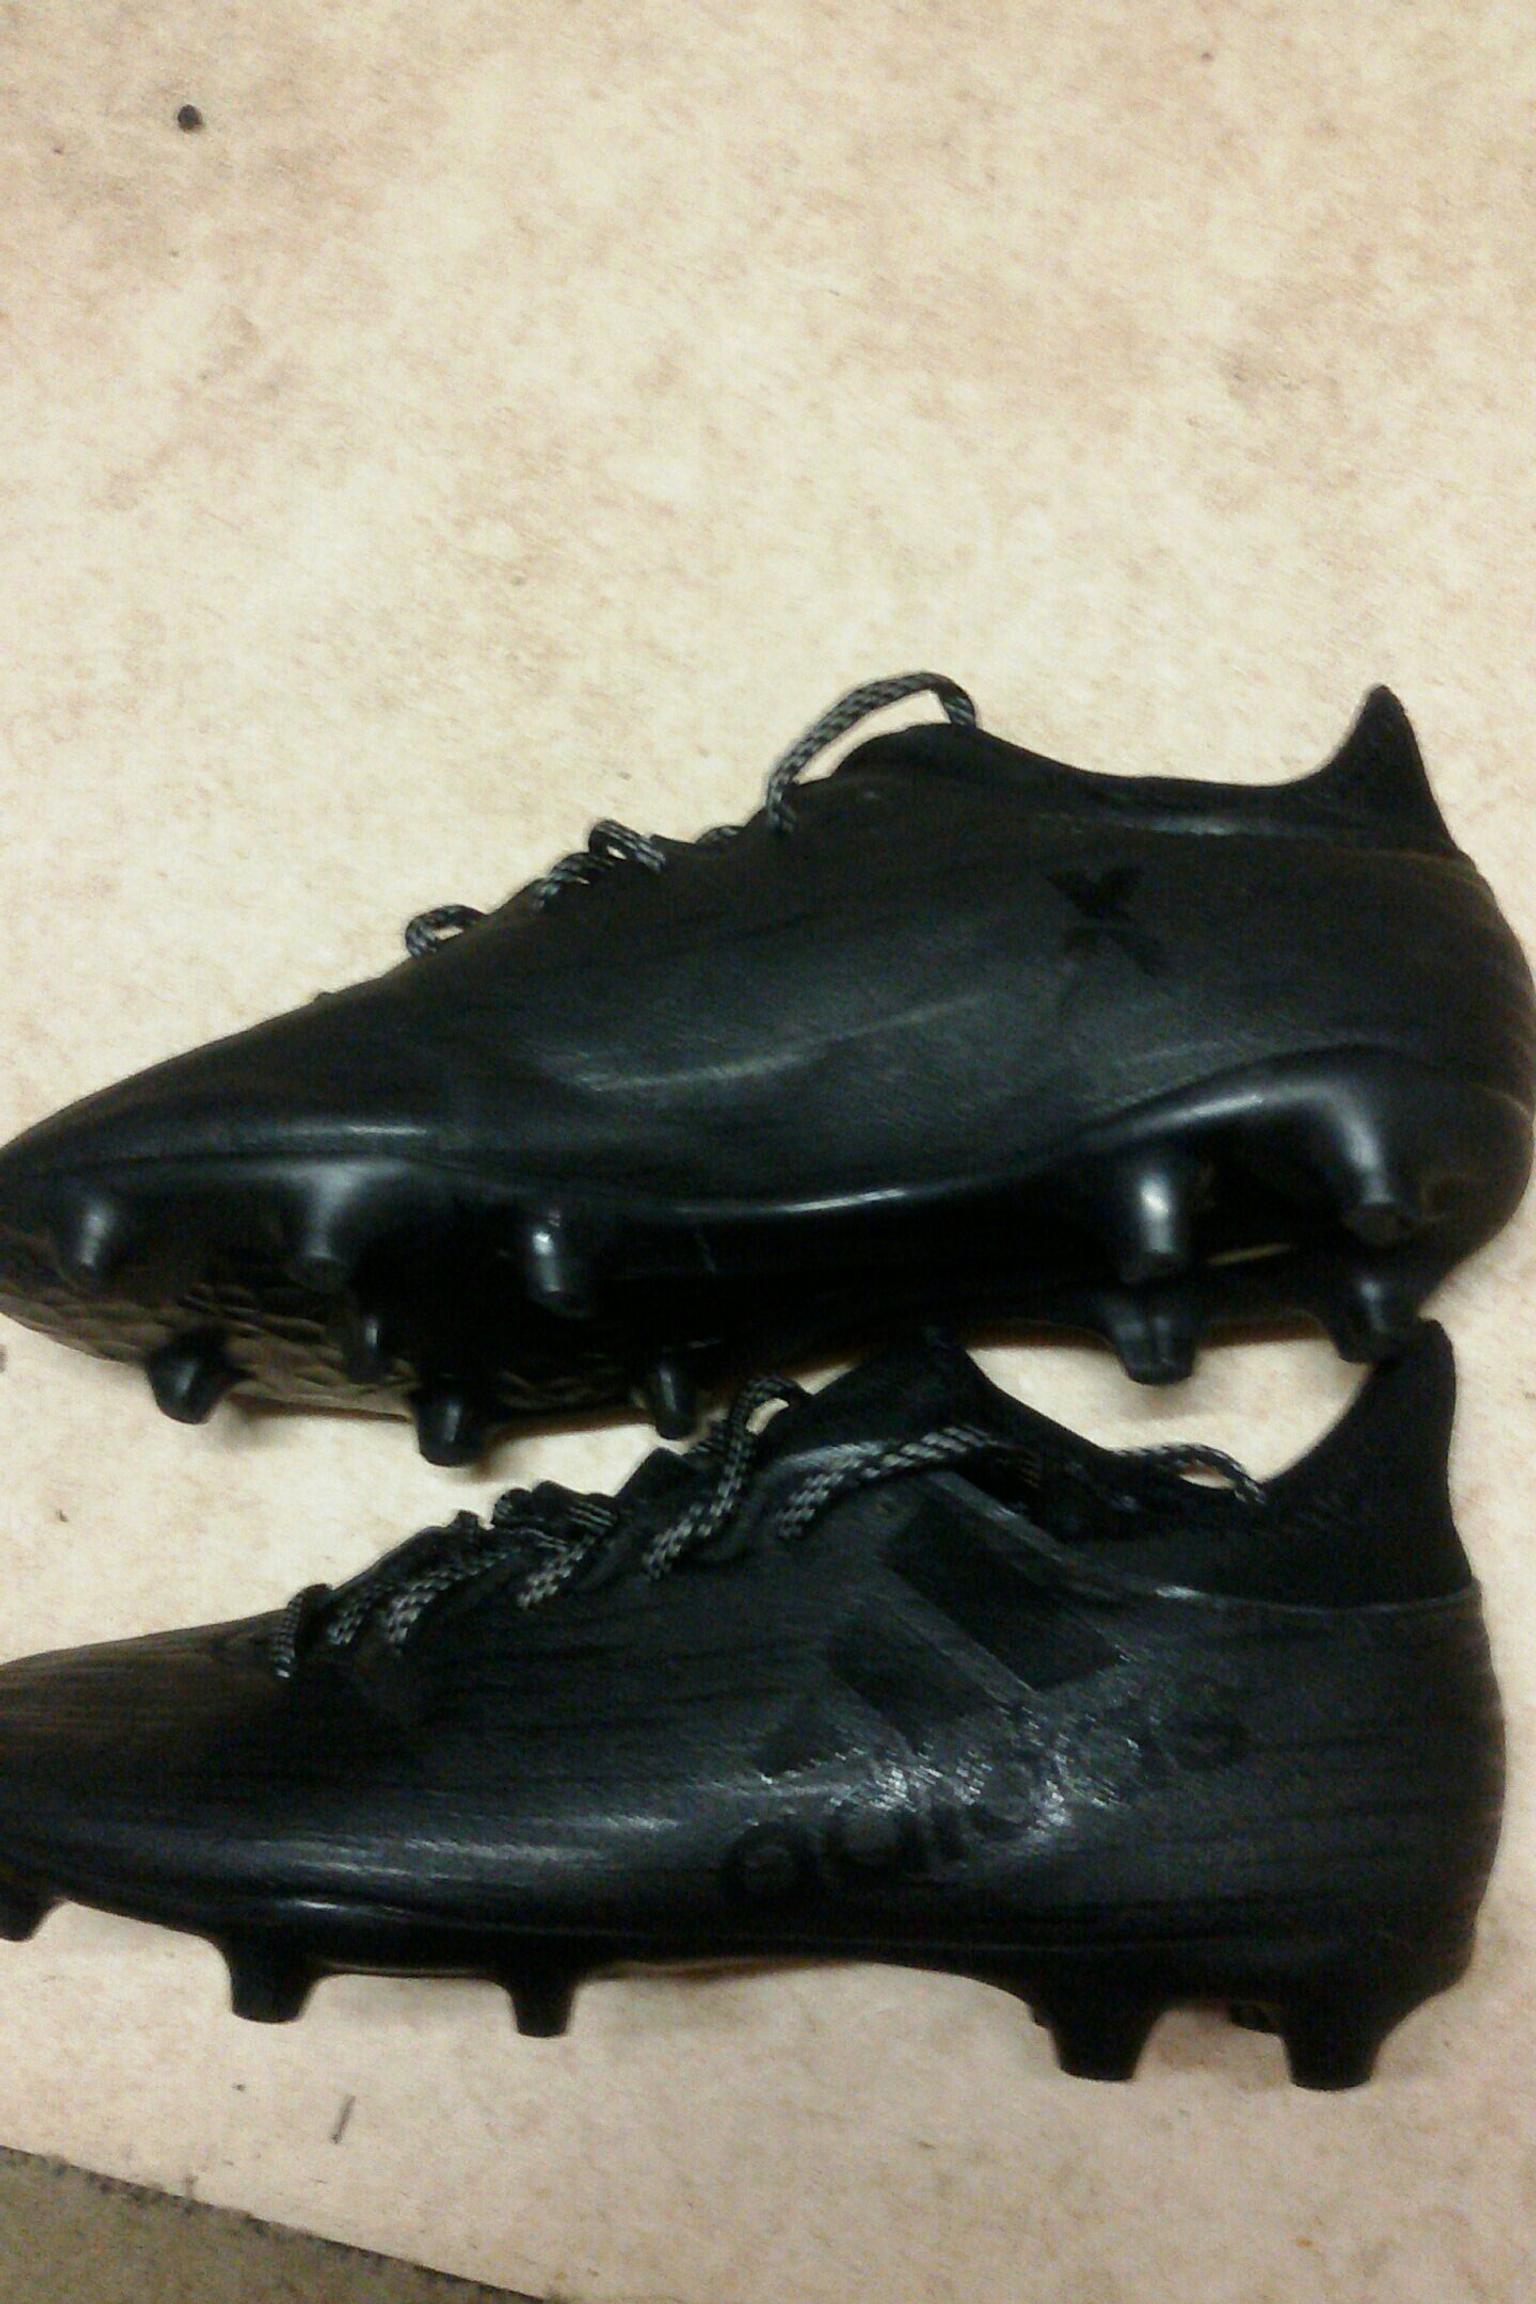 half sock football boots